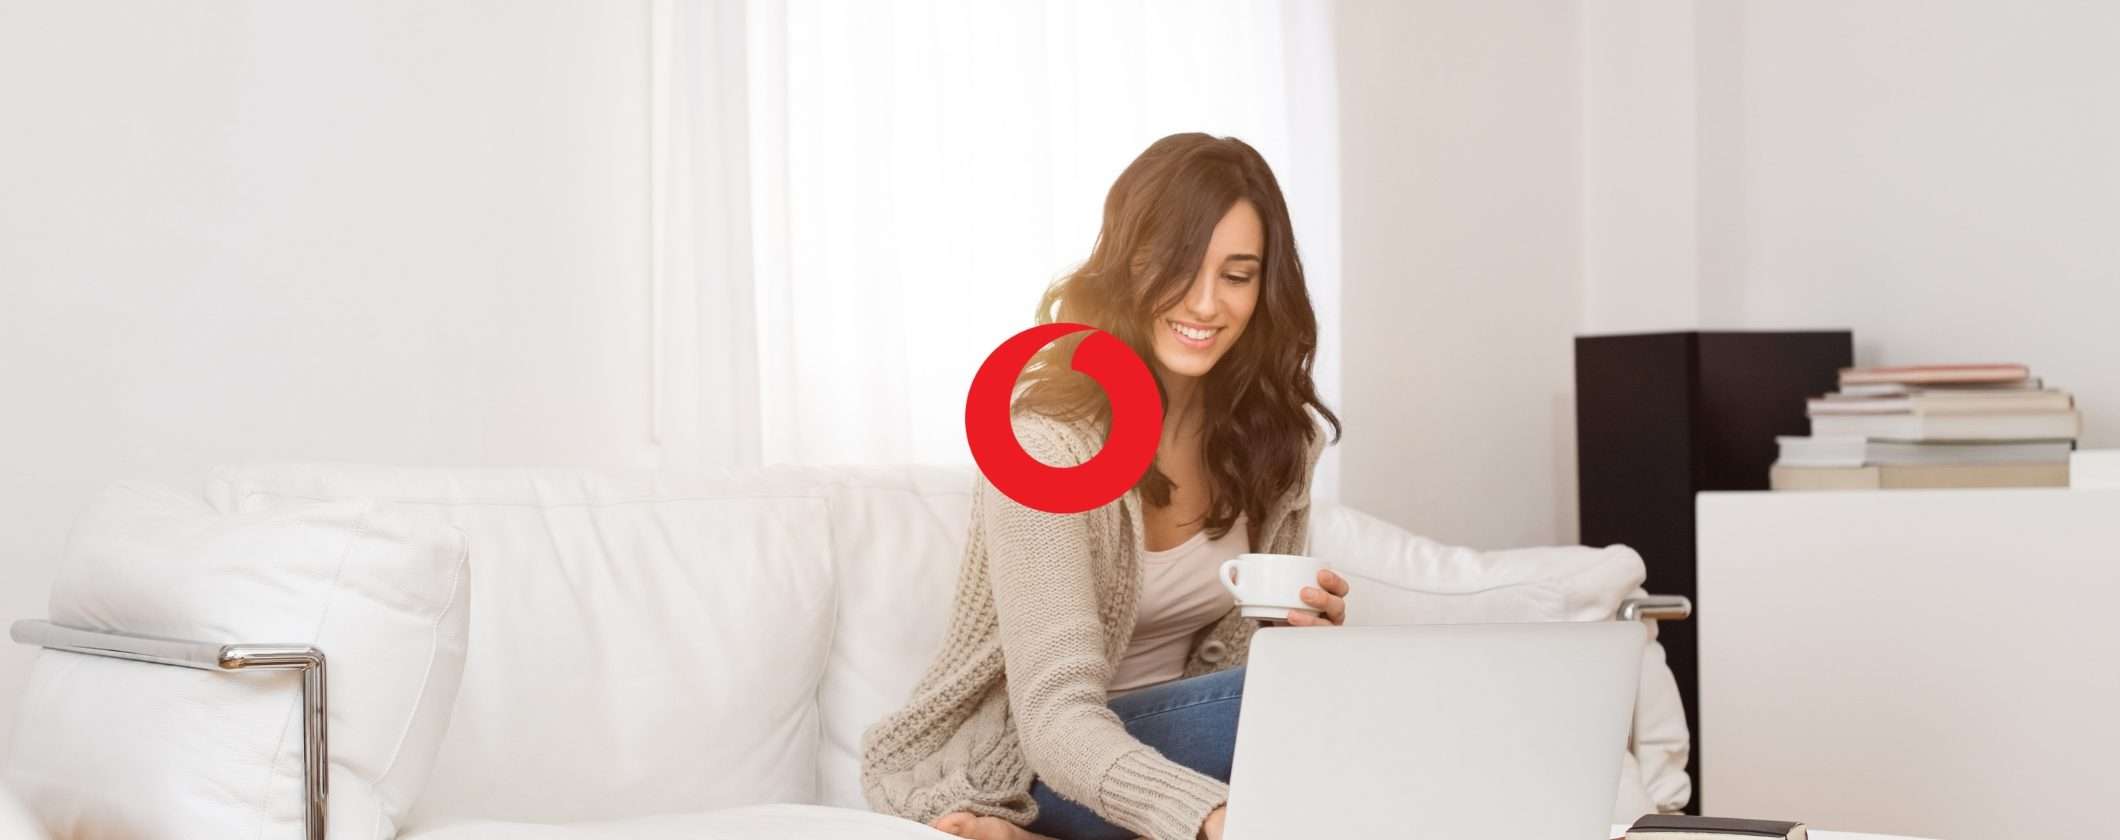 Vodafone: scegli l'OFFERTA GIUSTA per la tua casa